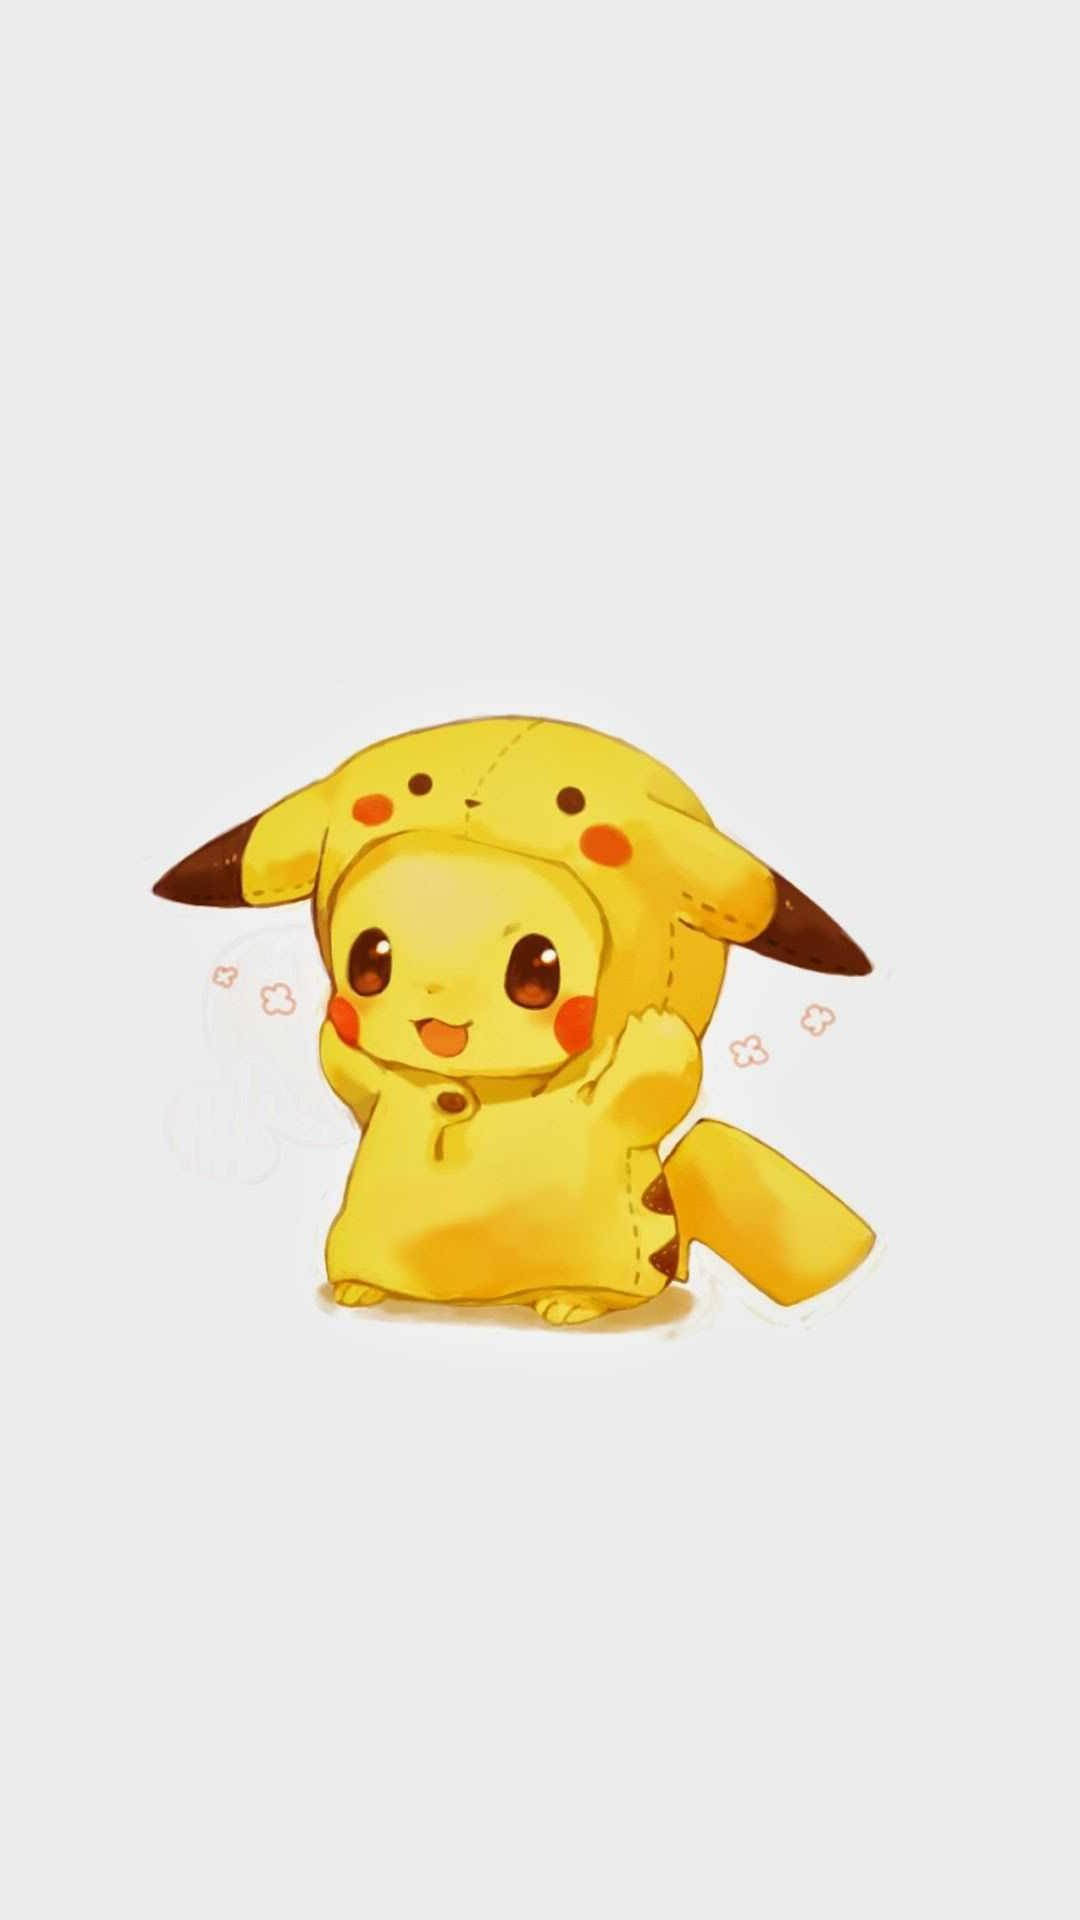 Little Pikachu Portrait Image Wallpaper